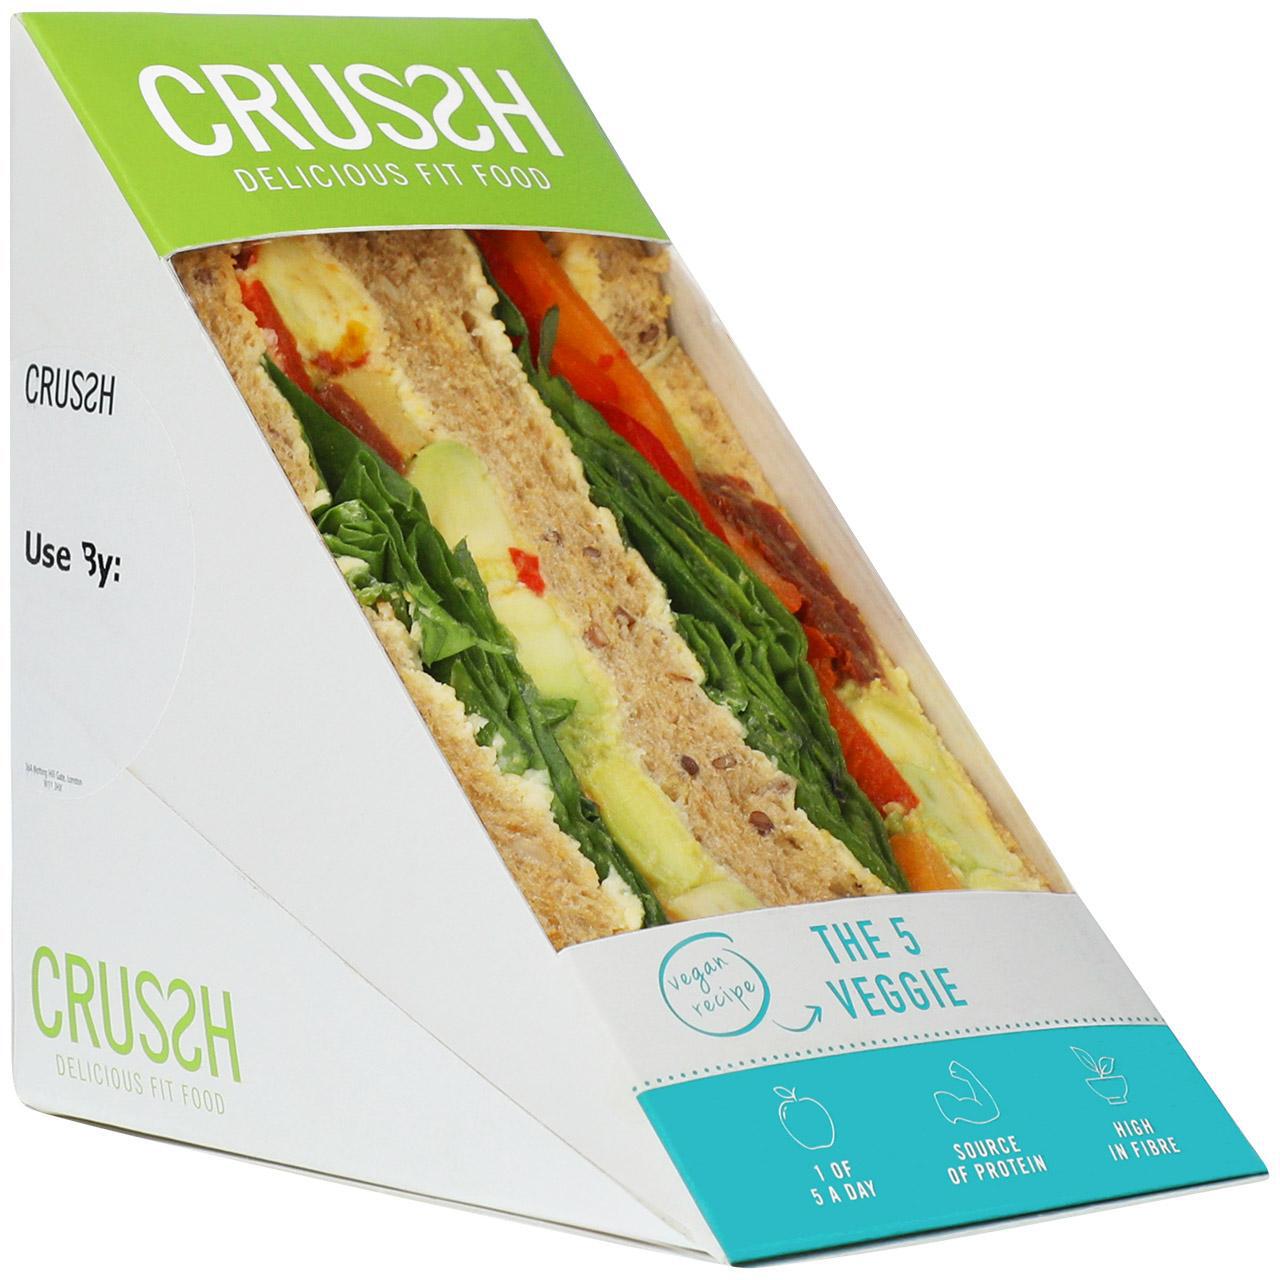 Crussh 5 Veggie Sandwich